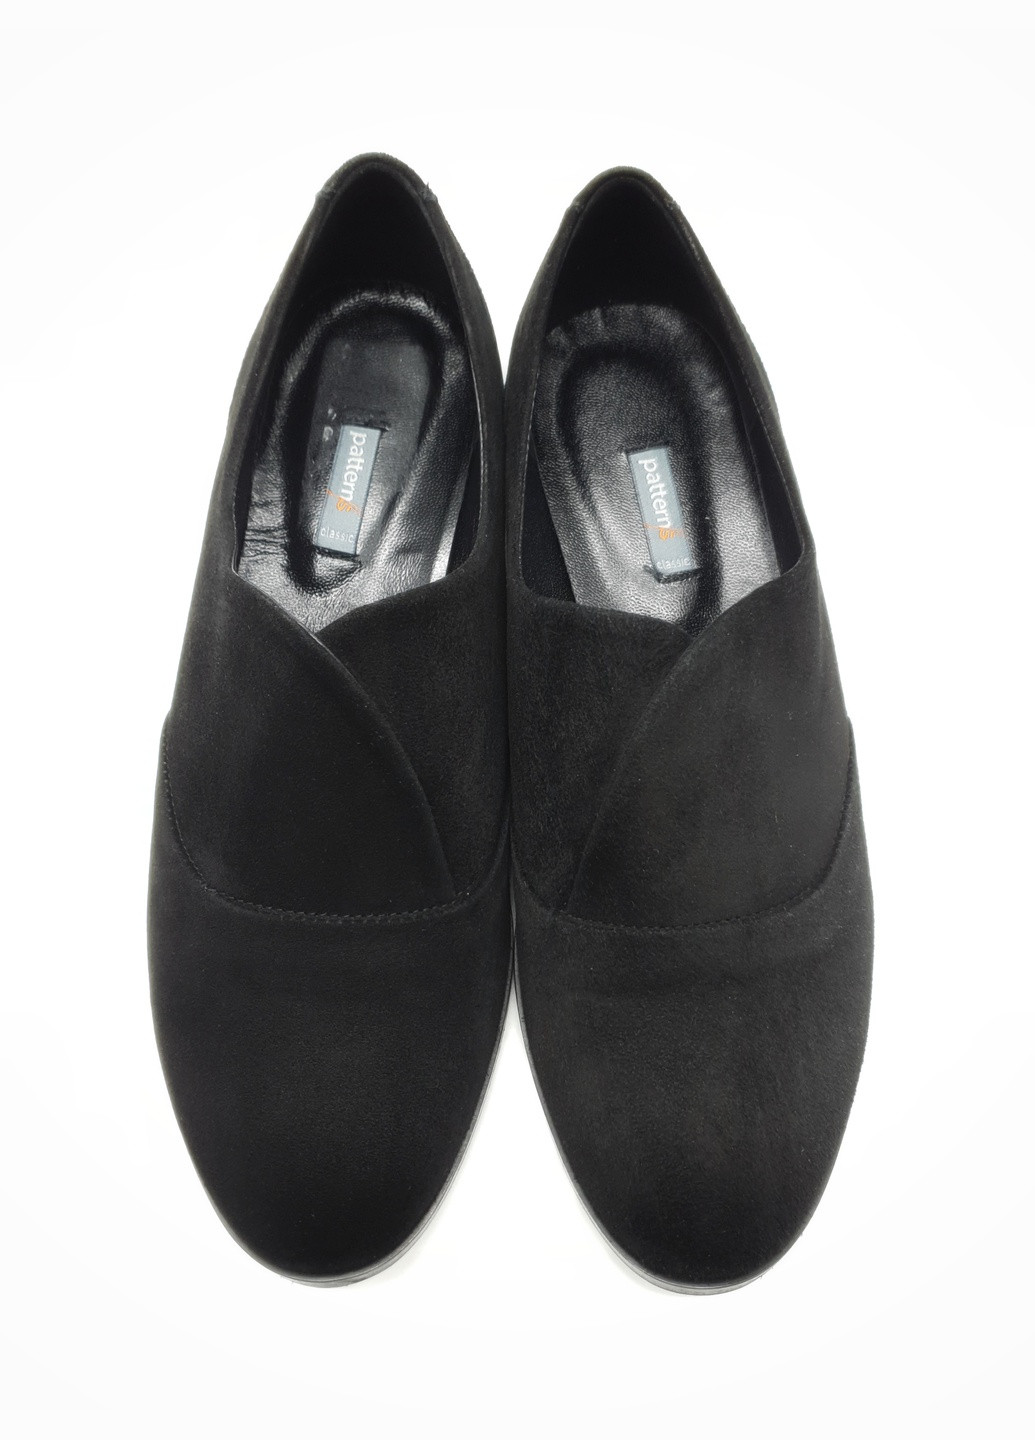 Женские туфли черные замшевые P-17-14 24,5 см (р) patterns